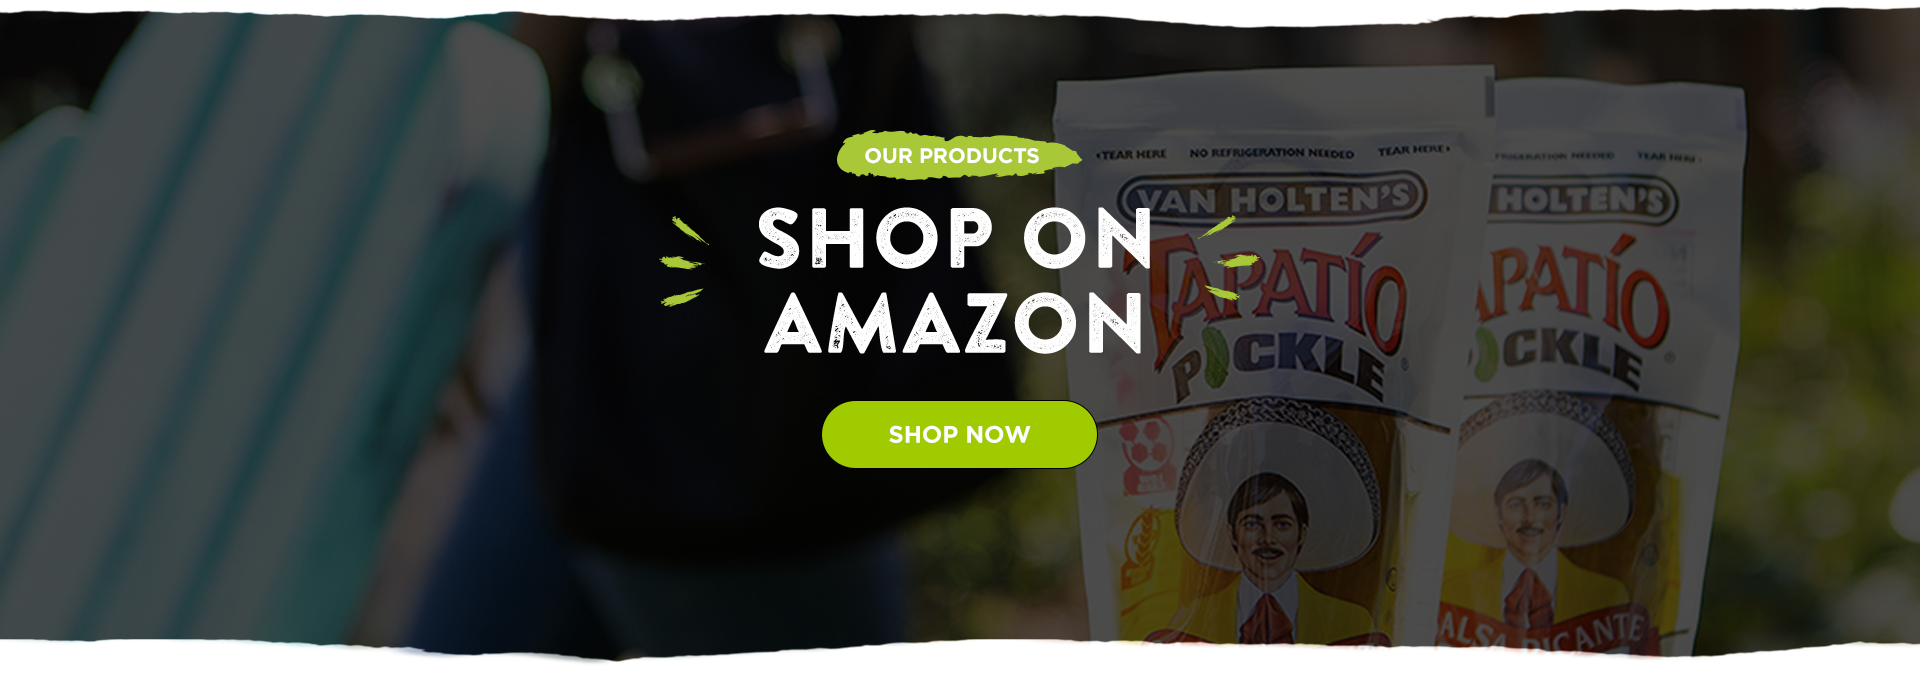 Shop On Amazon